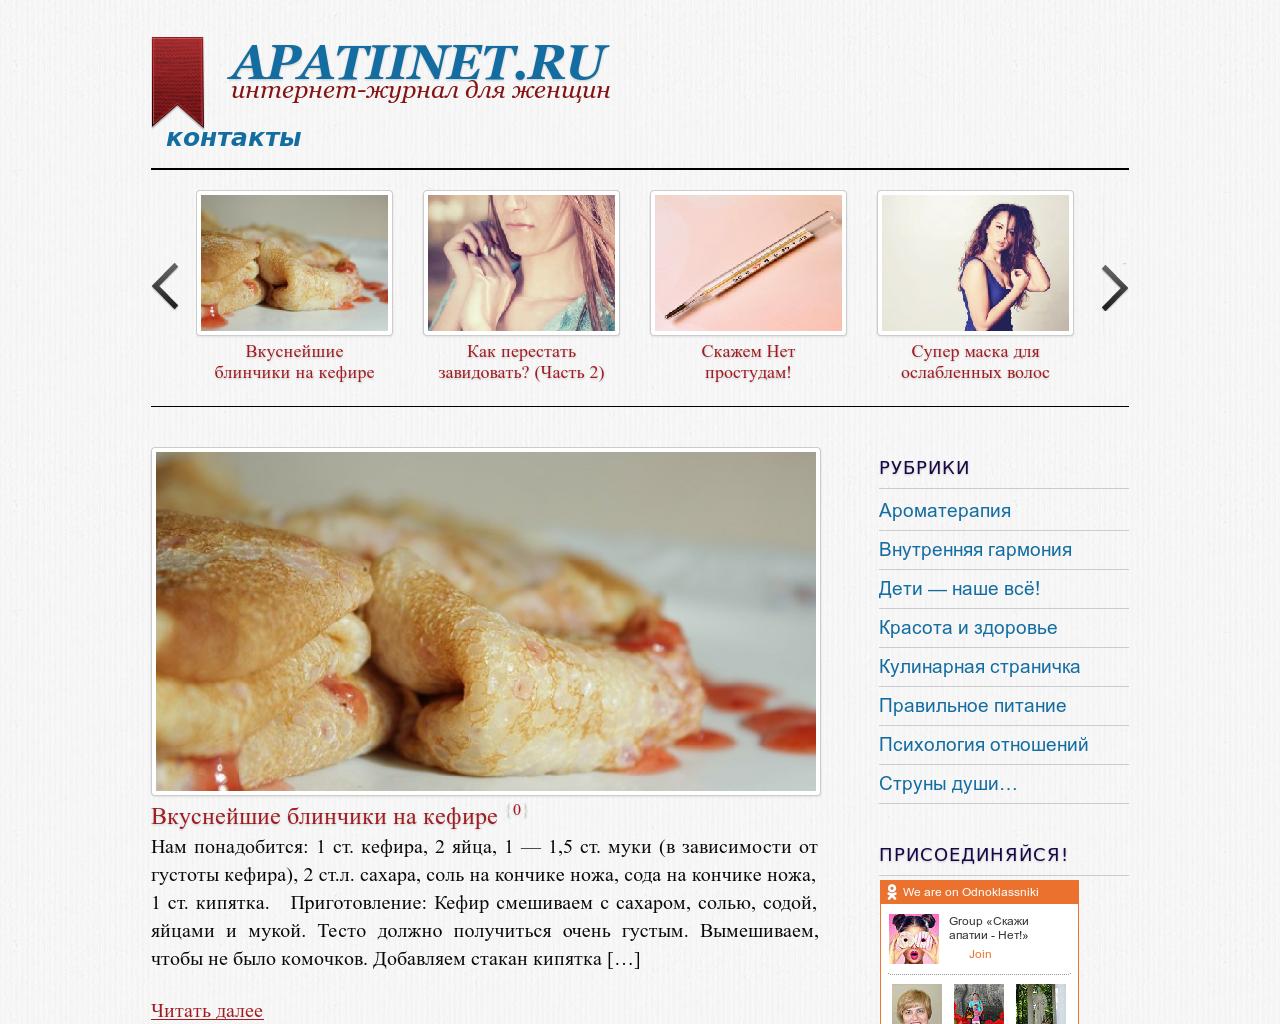 Изображение сайта apatiinet.ru в разрешении 1280x1024